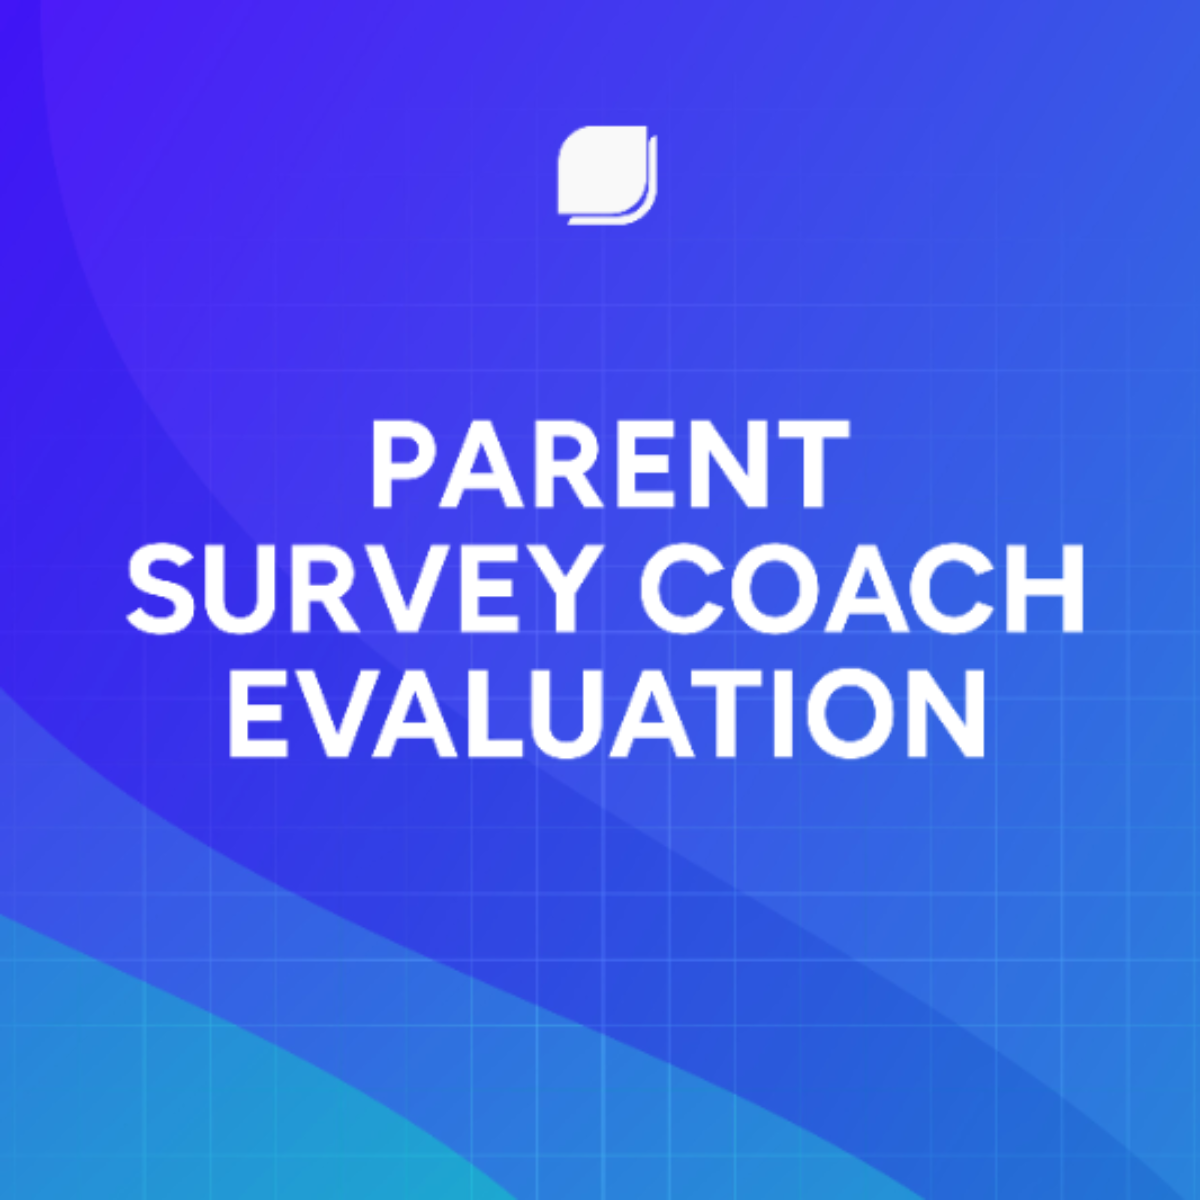 Parent Survey Coach Evaluation Template